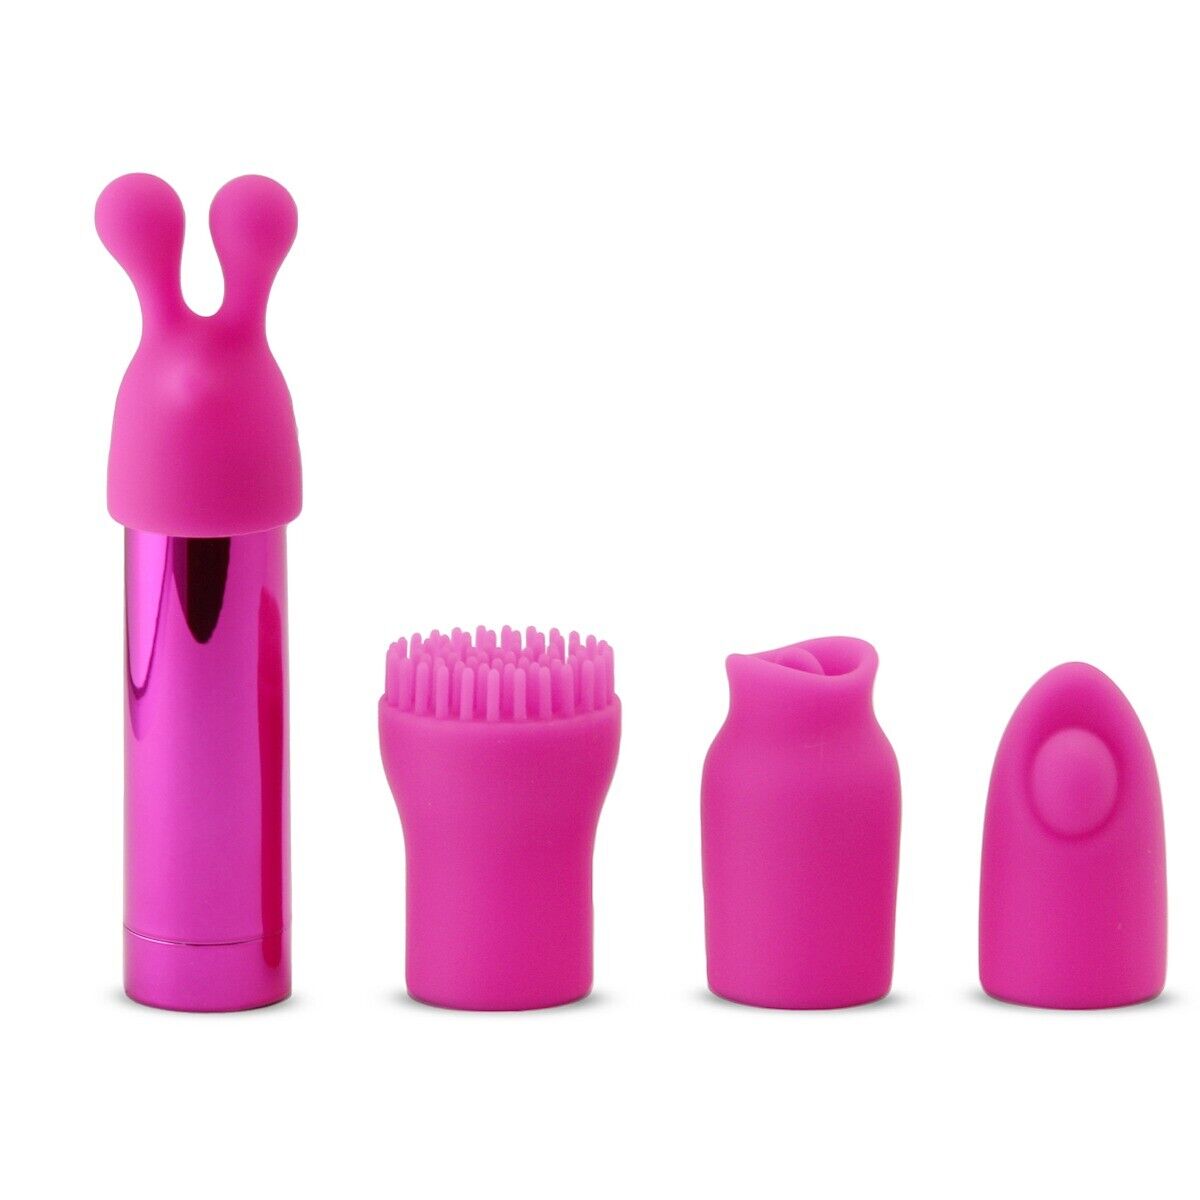 Rechargeable Pocket Vibrator Massager Bullet Vibrator Beginner Women Sex Toy Kit